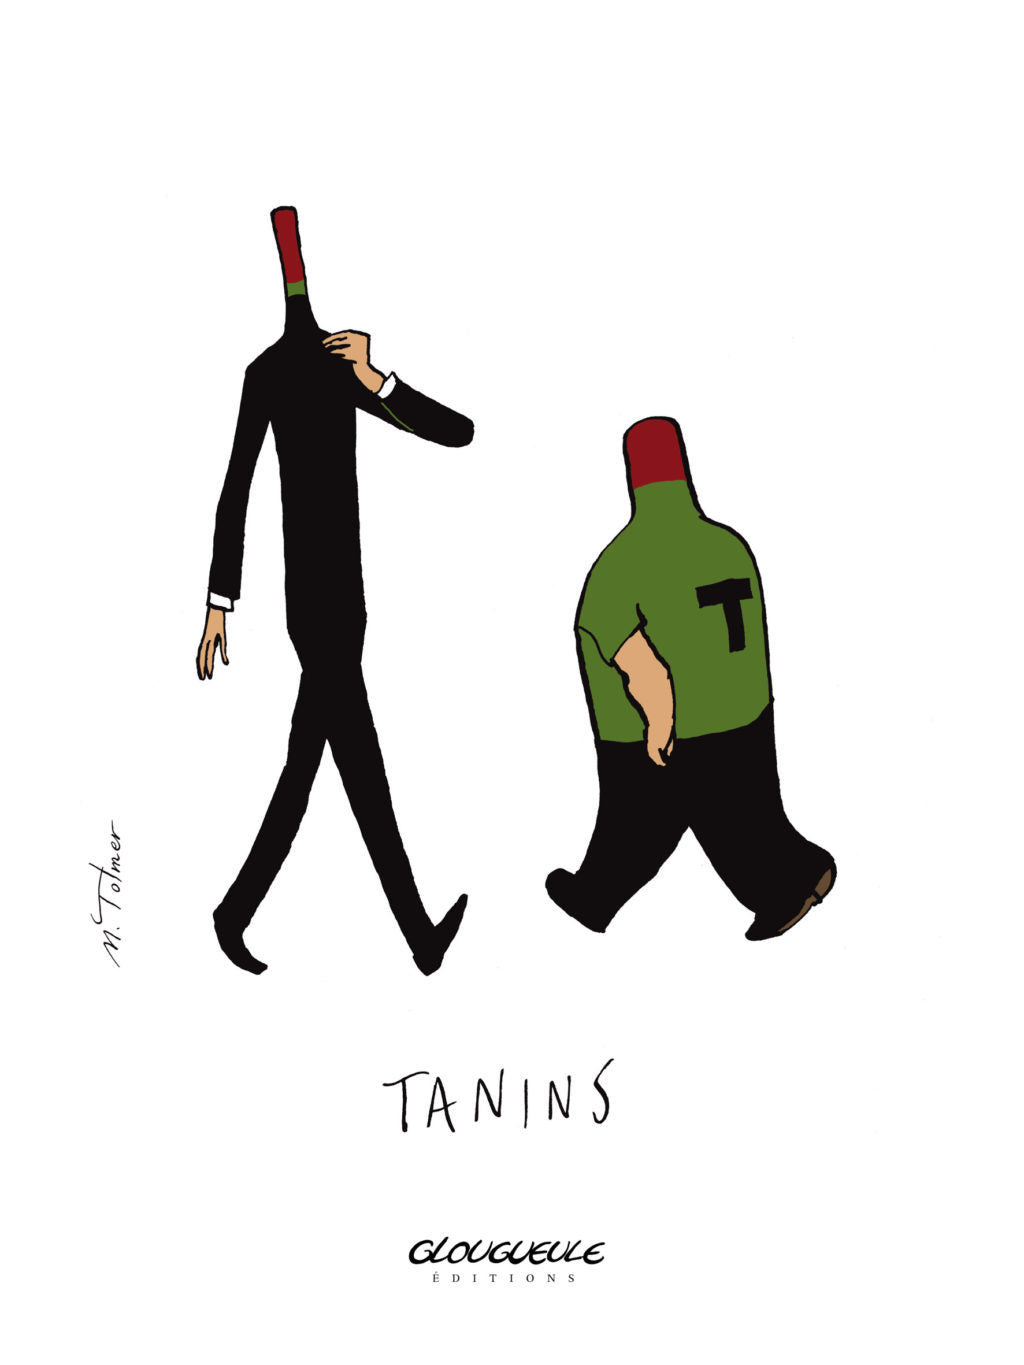 Tanins